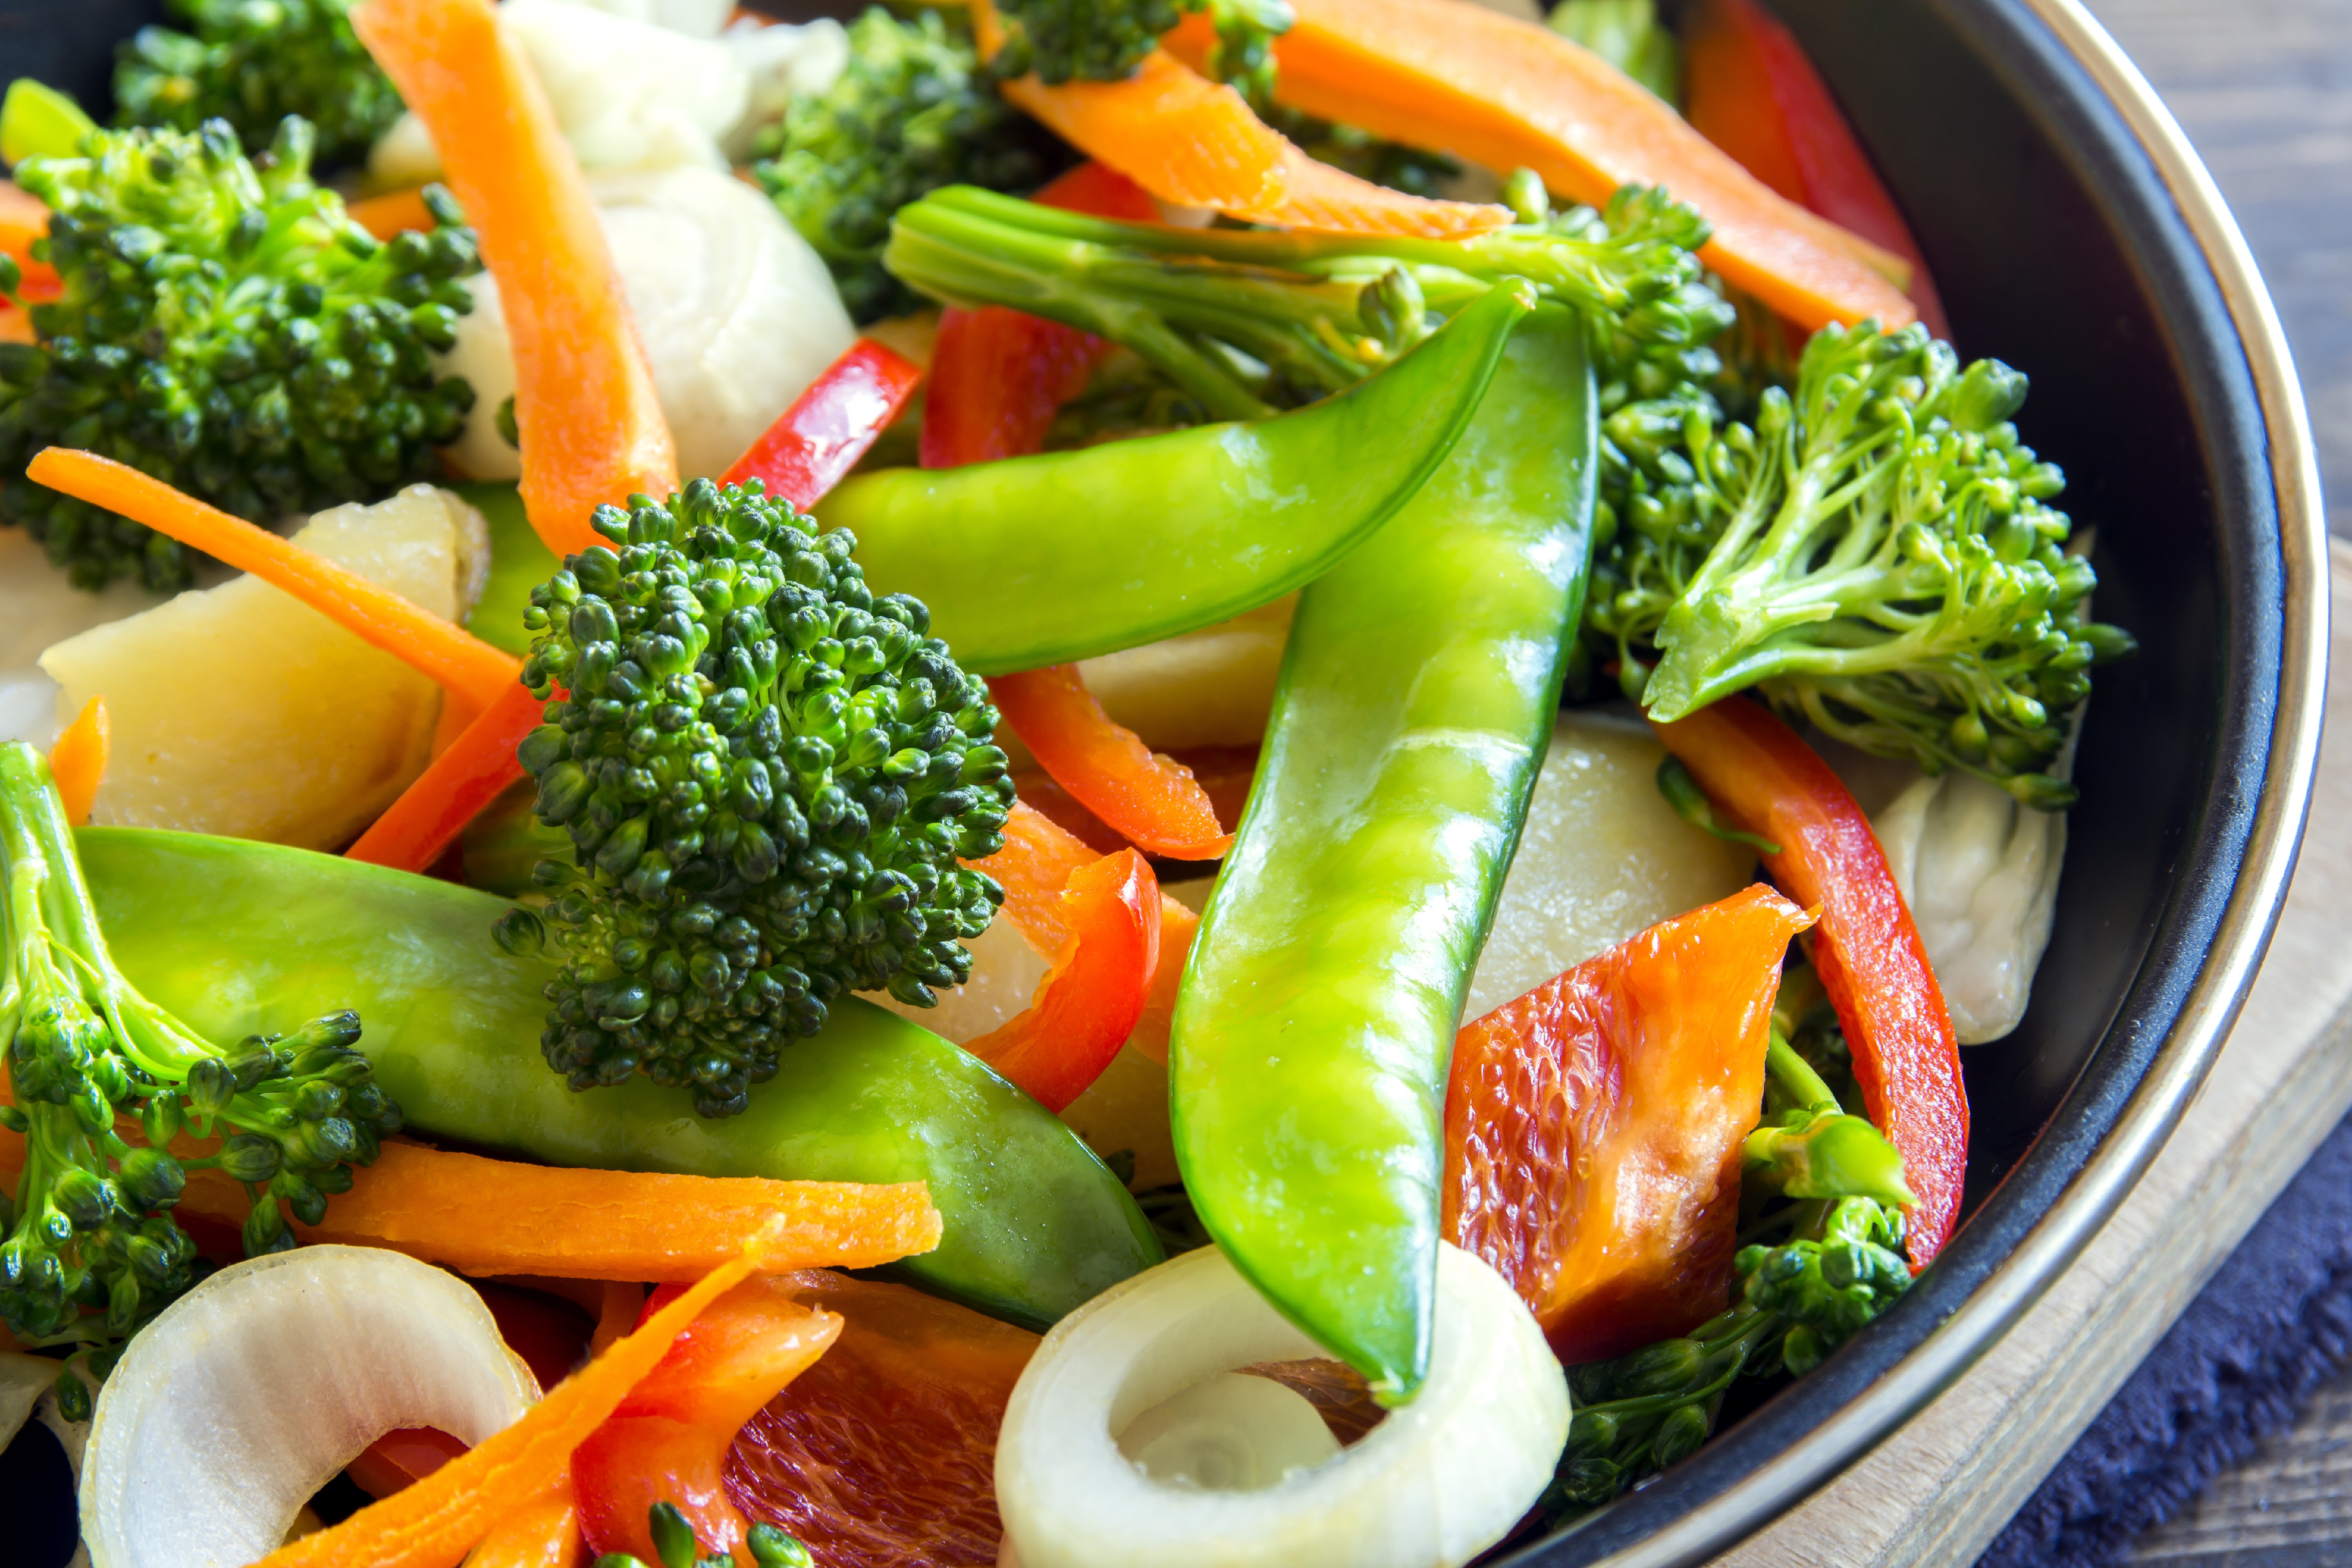 Mixed vegetables. Вегетарианское питание. Вегетарианская еда на столе. Овощи на пару. Здоровое питание мясо.